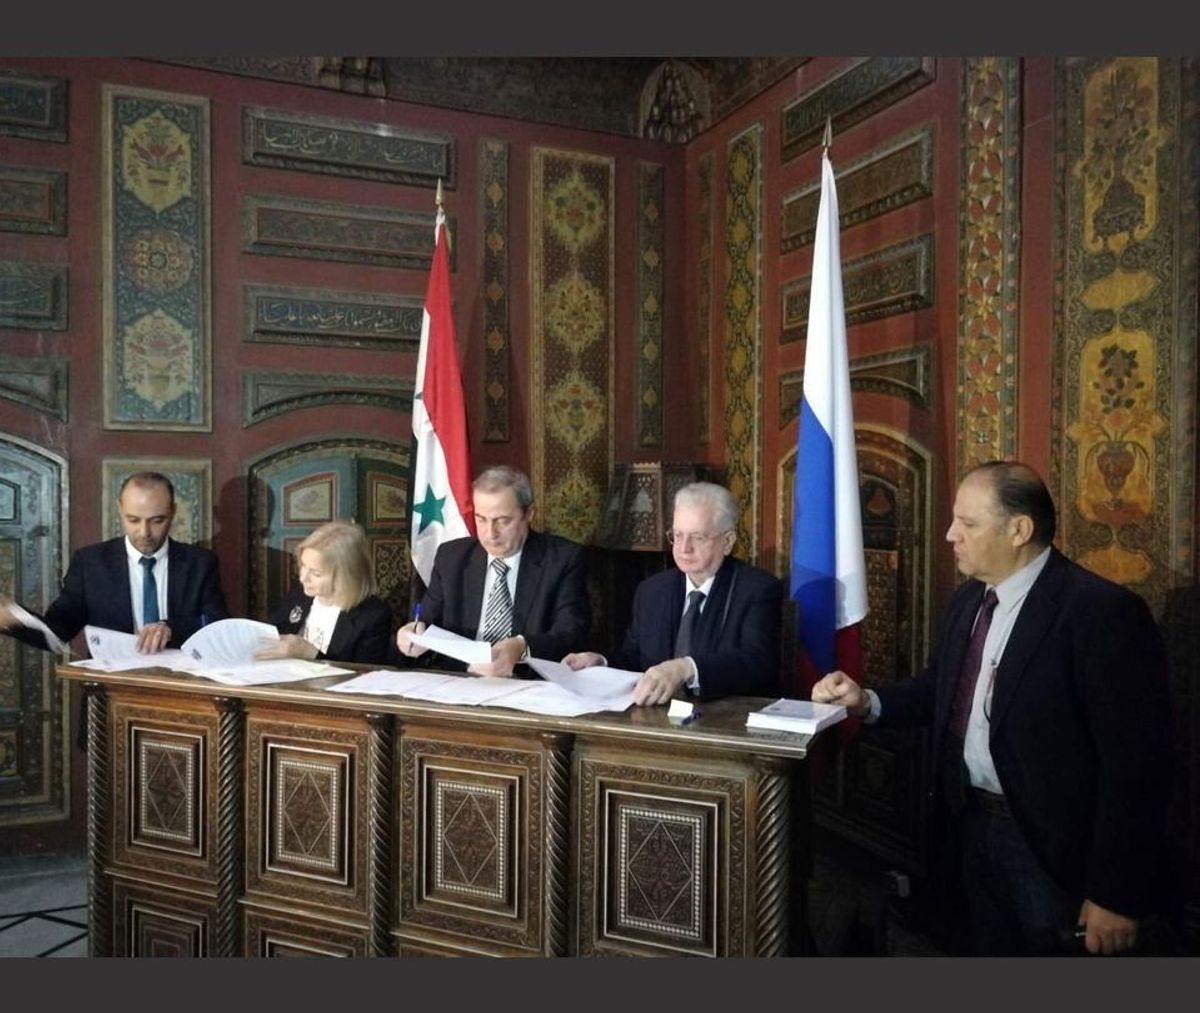 Mahmoud Hammoud et Mikhaïl Piotrovski pendant la signature de l’accord à Damas. © Courtesy du musée de l’Ermitage